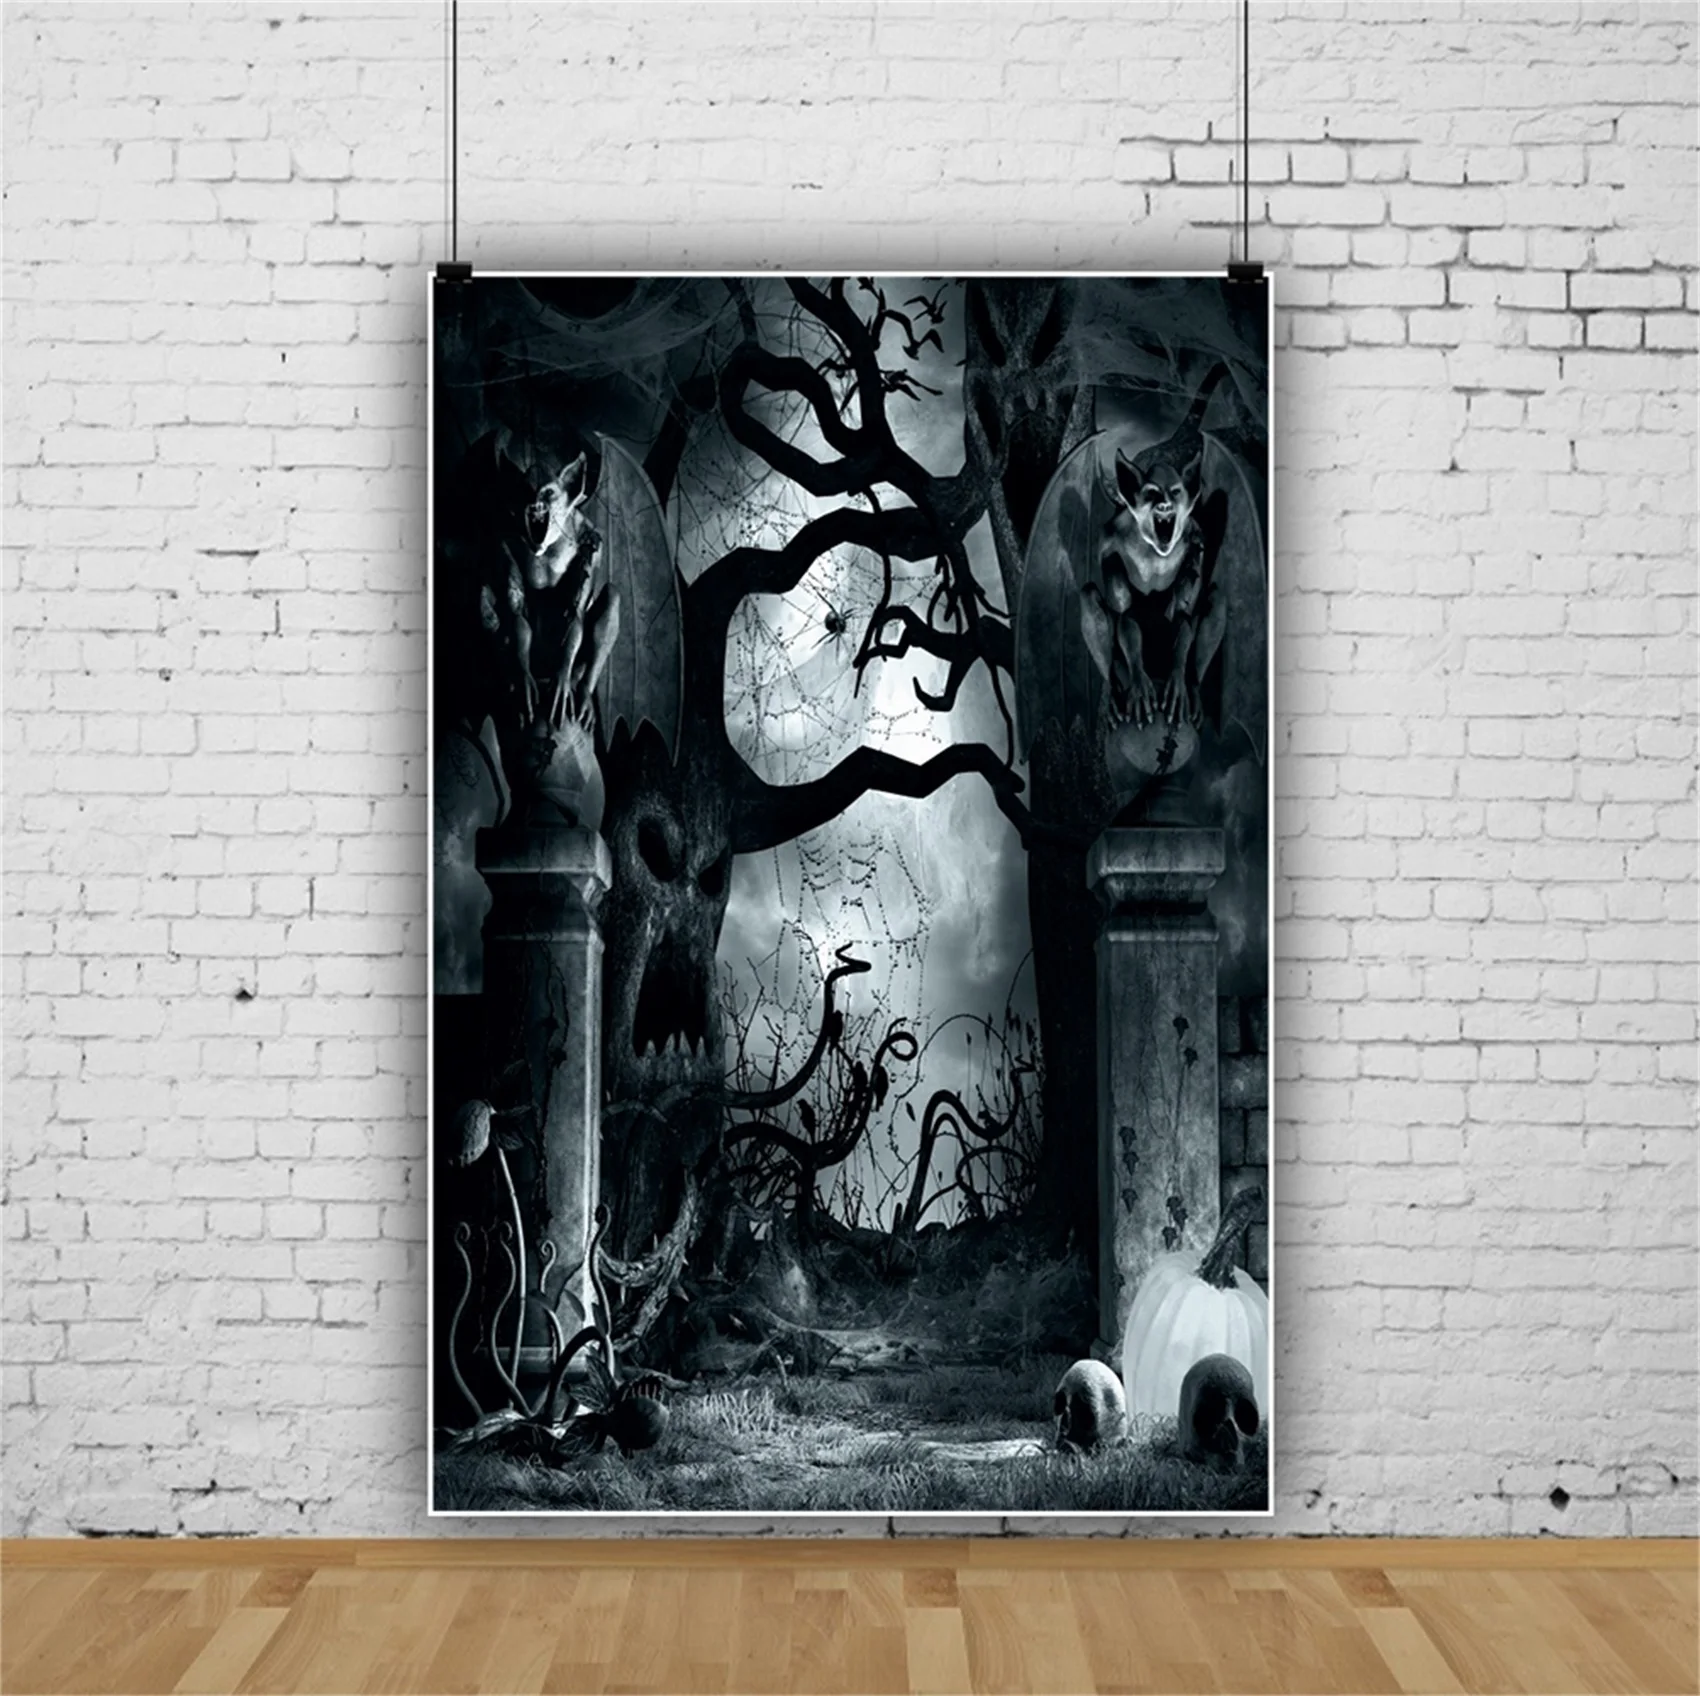 

Laeacco Темный Хэллоуин фоны для фотографии Дерево Призрак ужасный дух летучая мышь ночь живописный фото фон для фотостудии